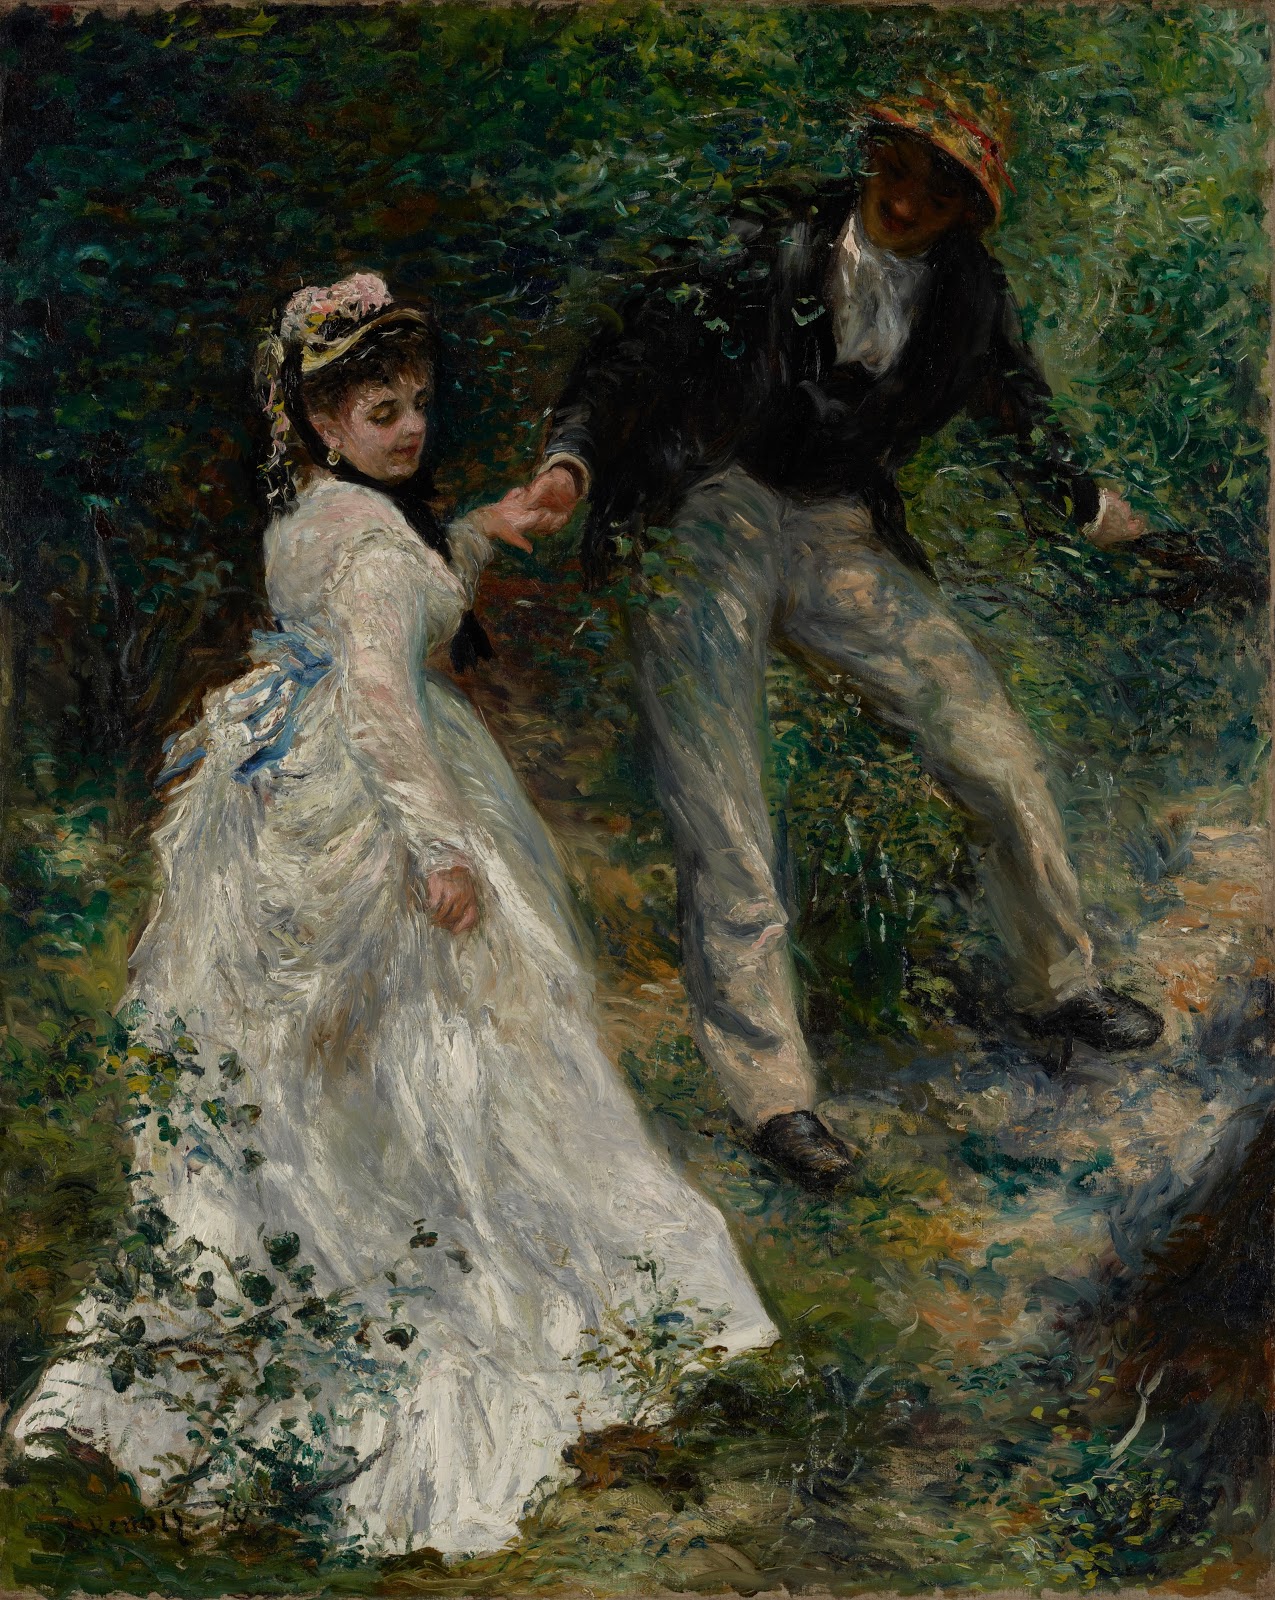 Pierre+Auguste+Renoir-1841-1-19 (518).jpg